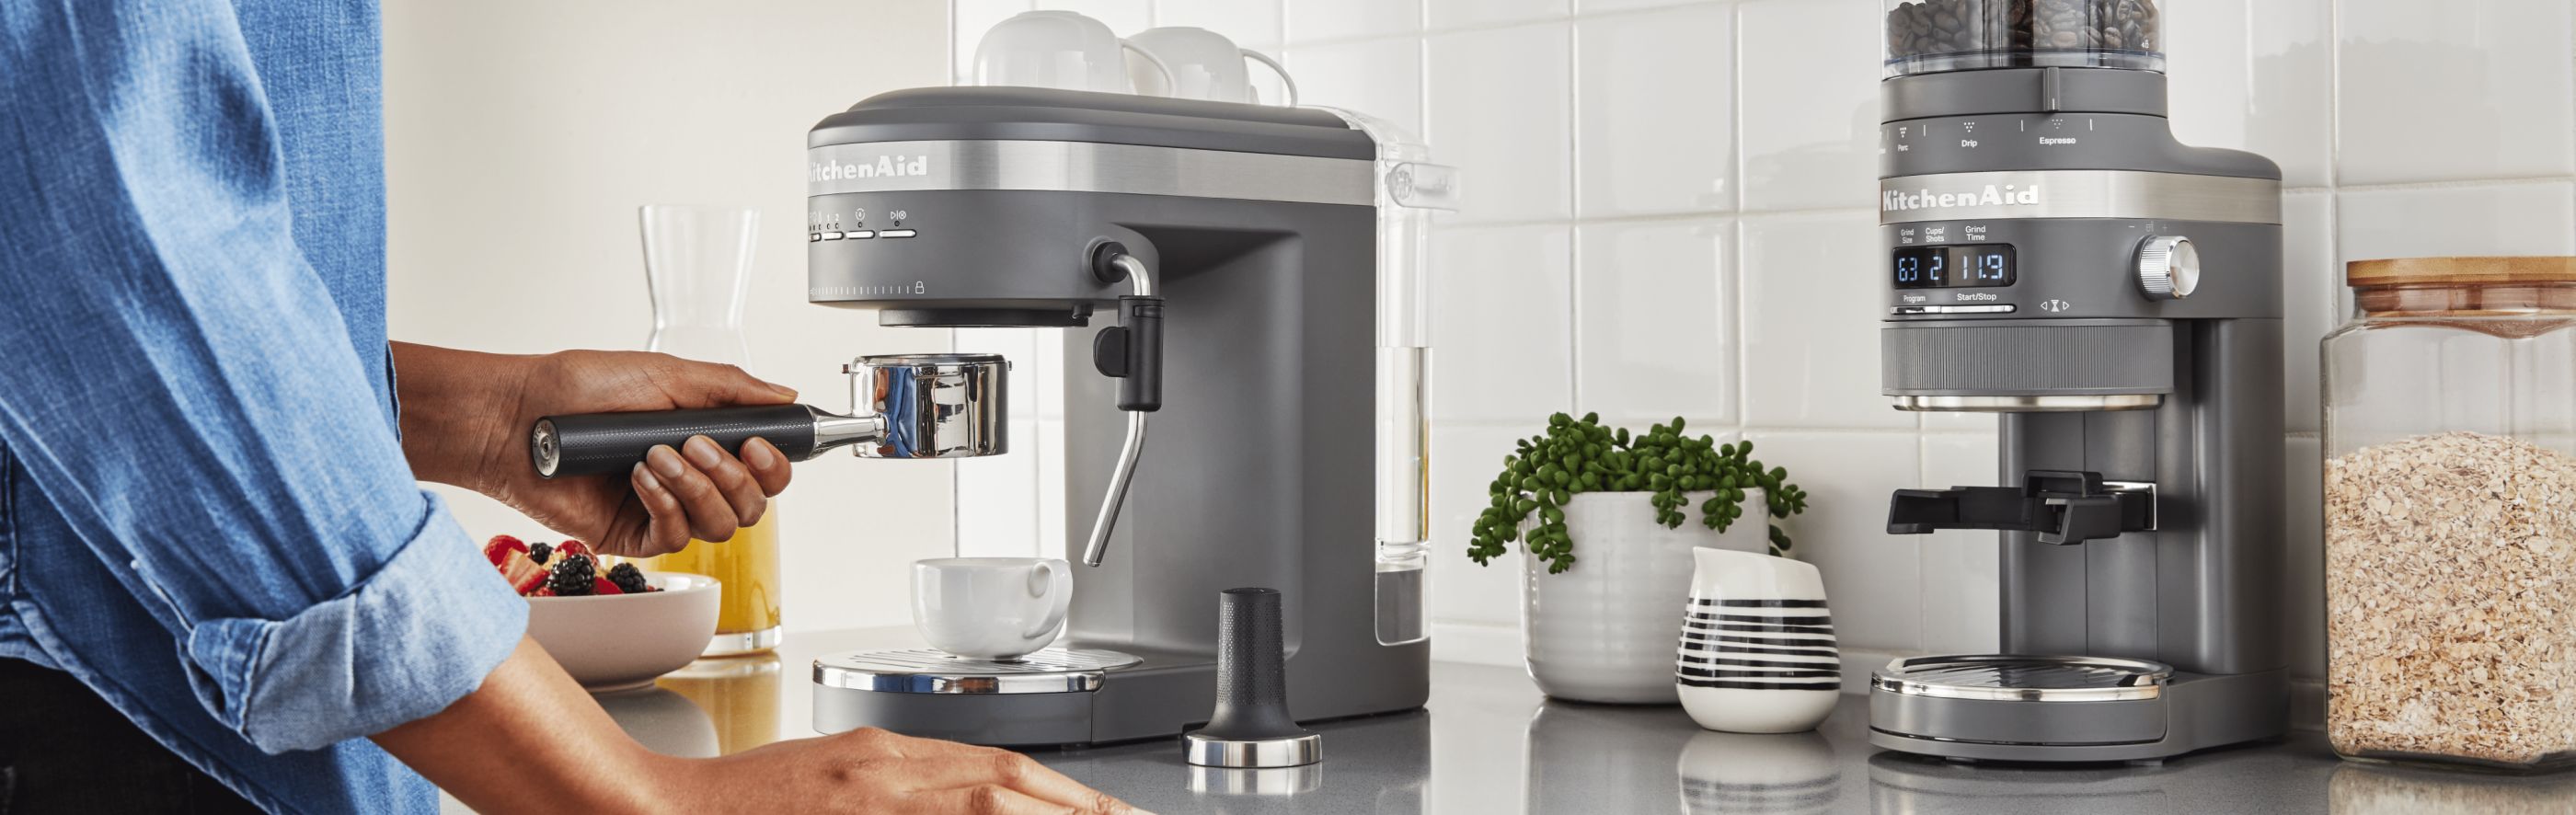 Espresso Machine Differences: Manual vs Semi-Automatic vs Automatic | KitchenAid